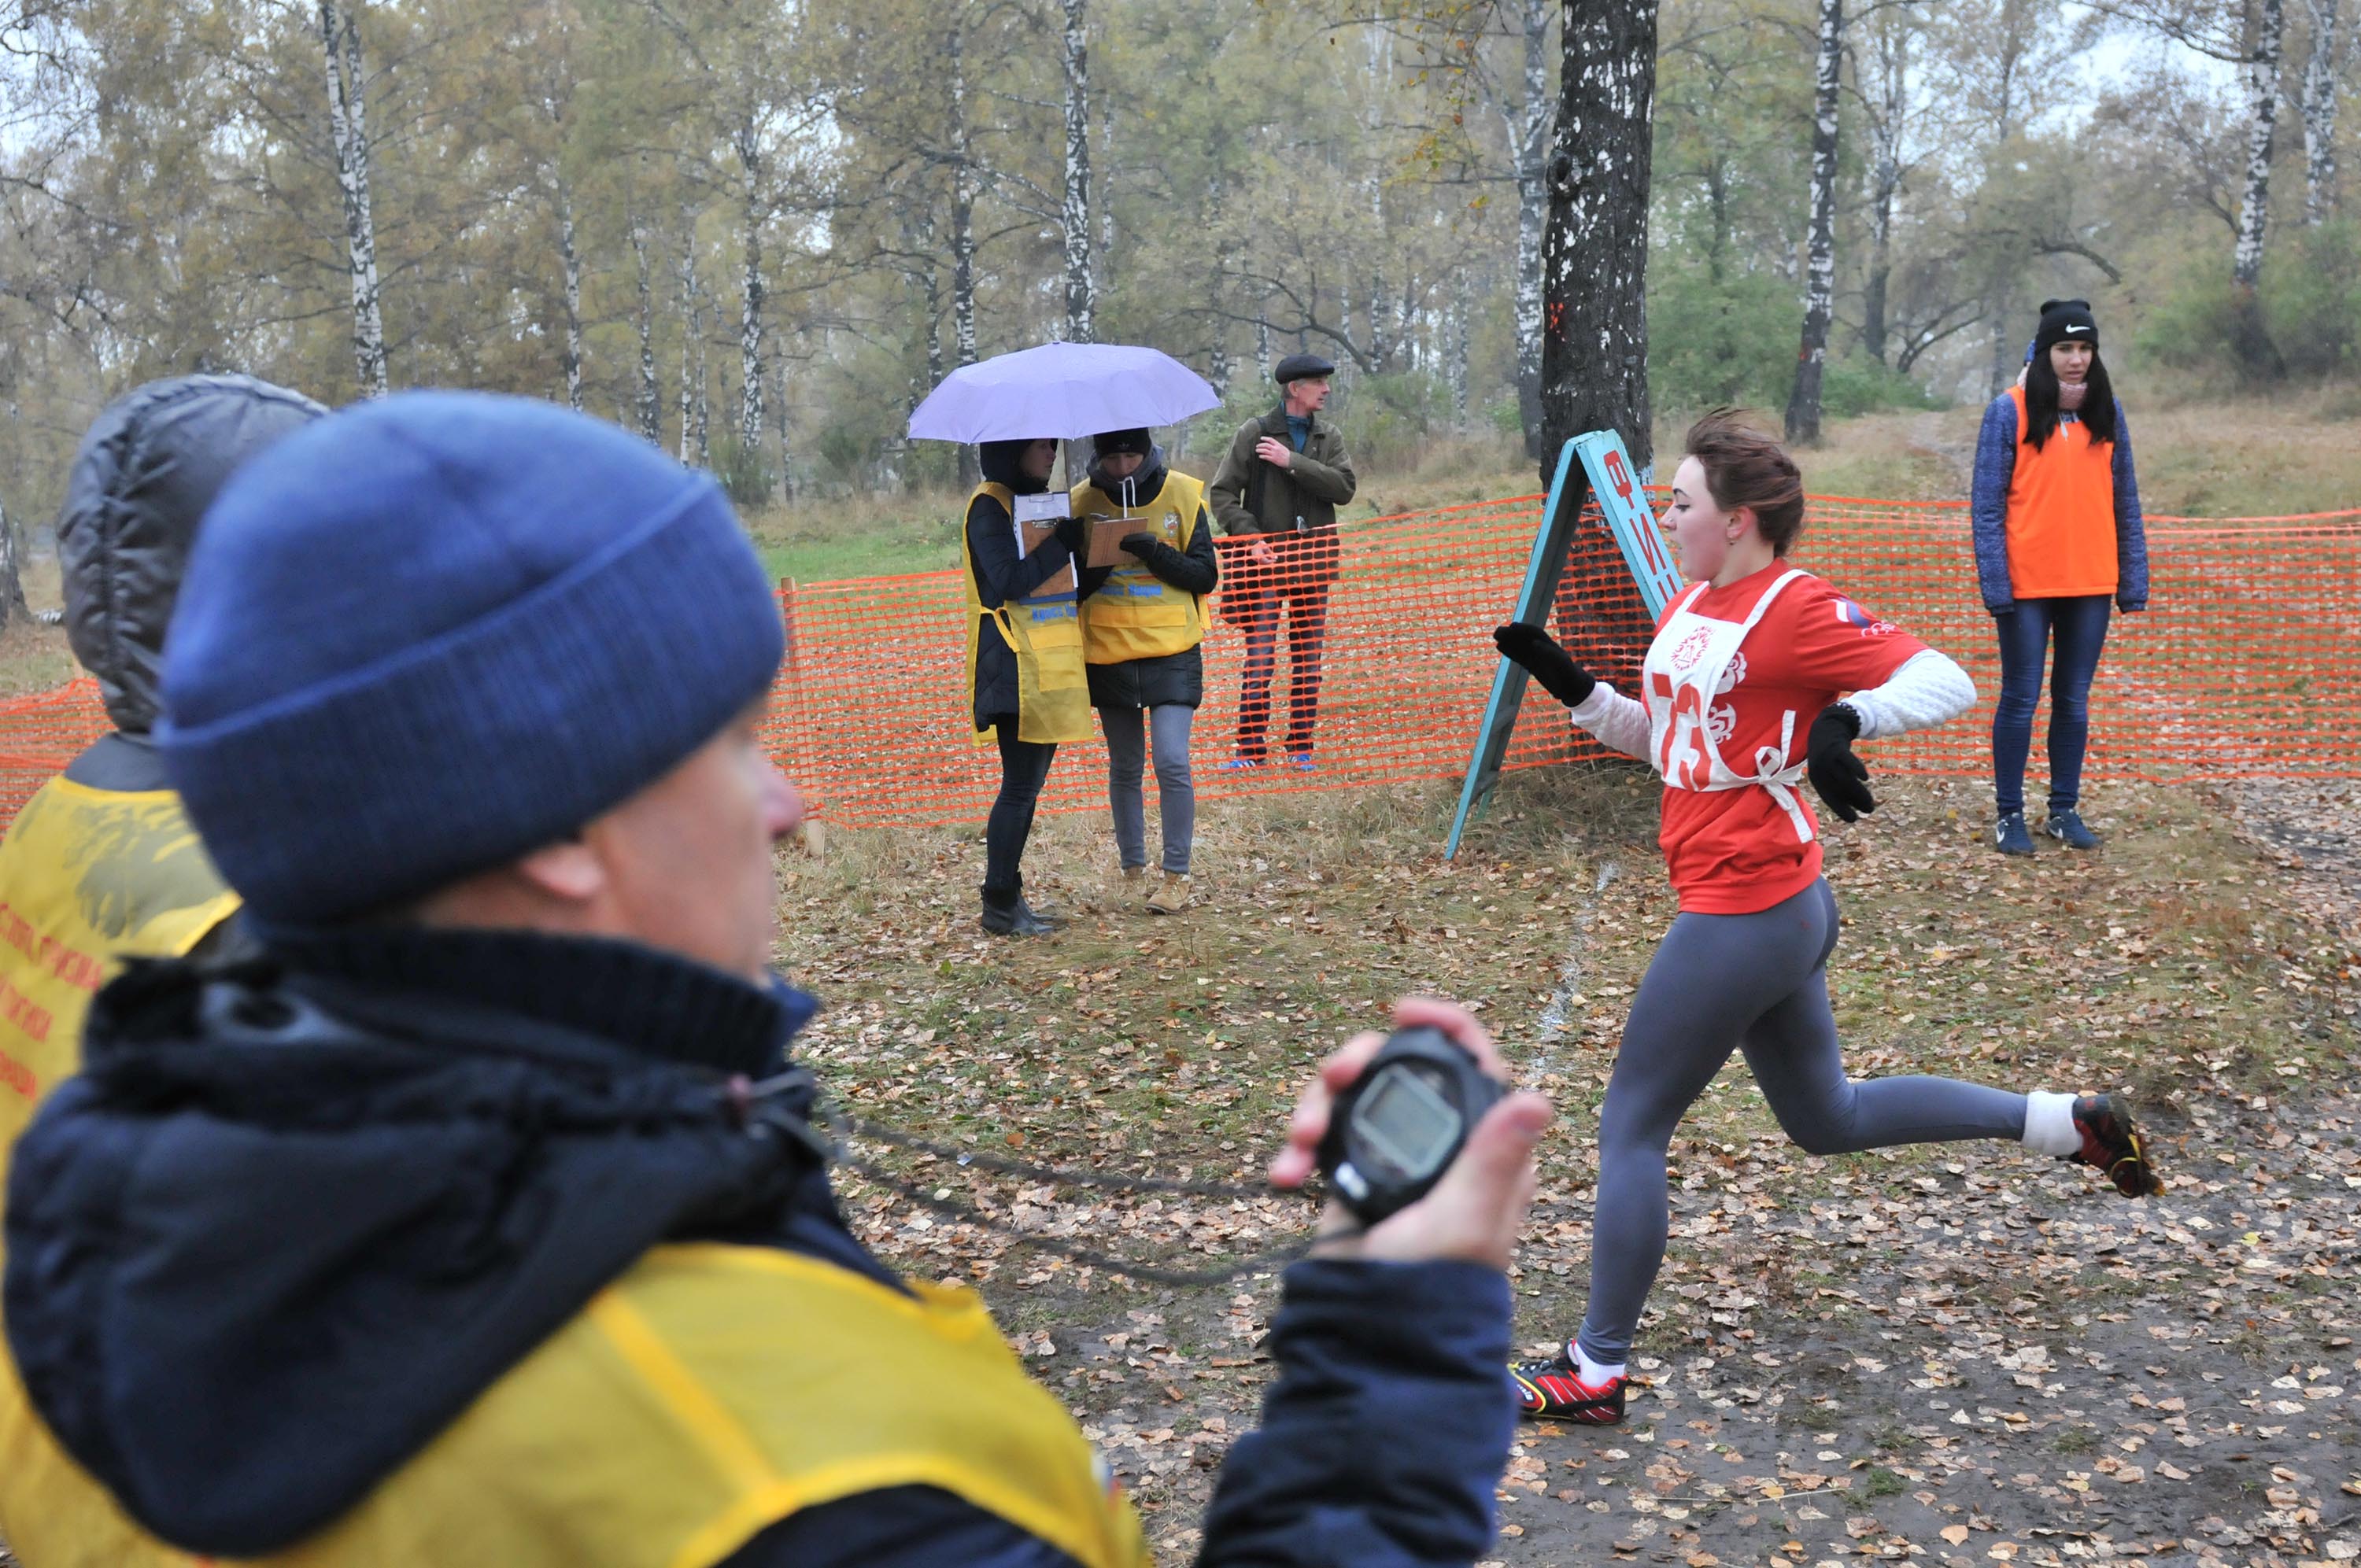 7 октября  в Тырганском парке г. Прокопьевска  прошел областной легкоатлетический кросс среди обучающихся профессиональных образовательных учреждений Кузбасса